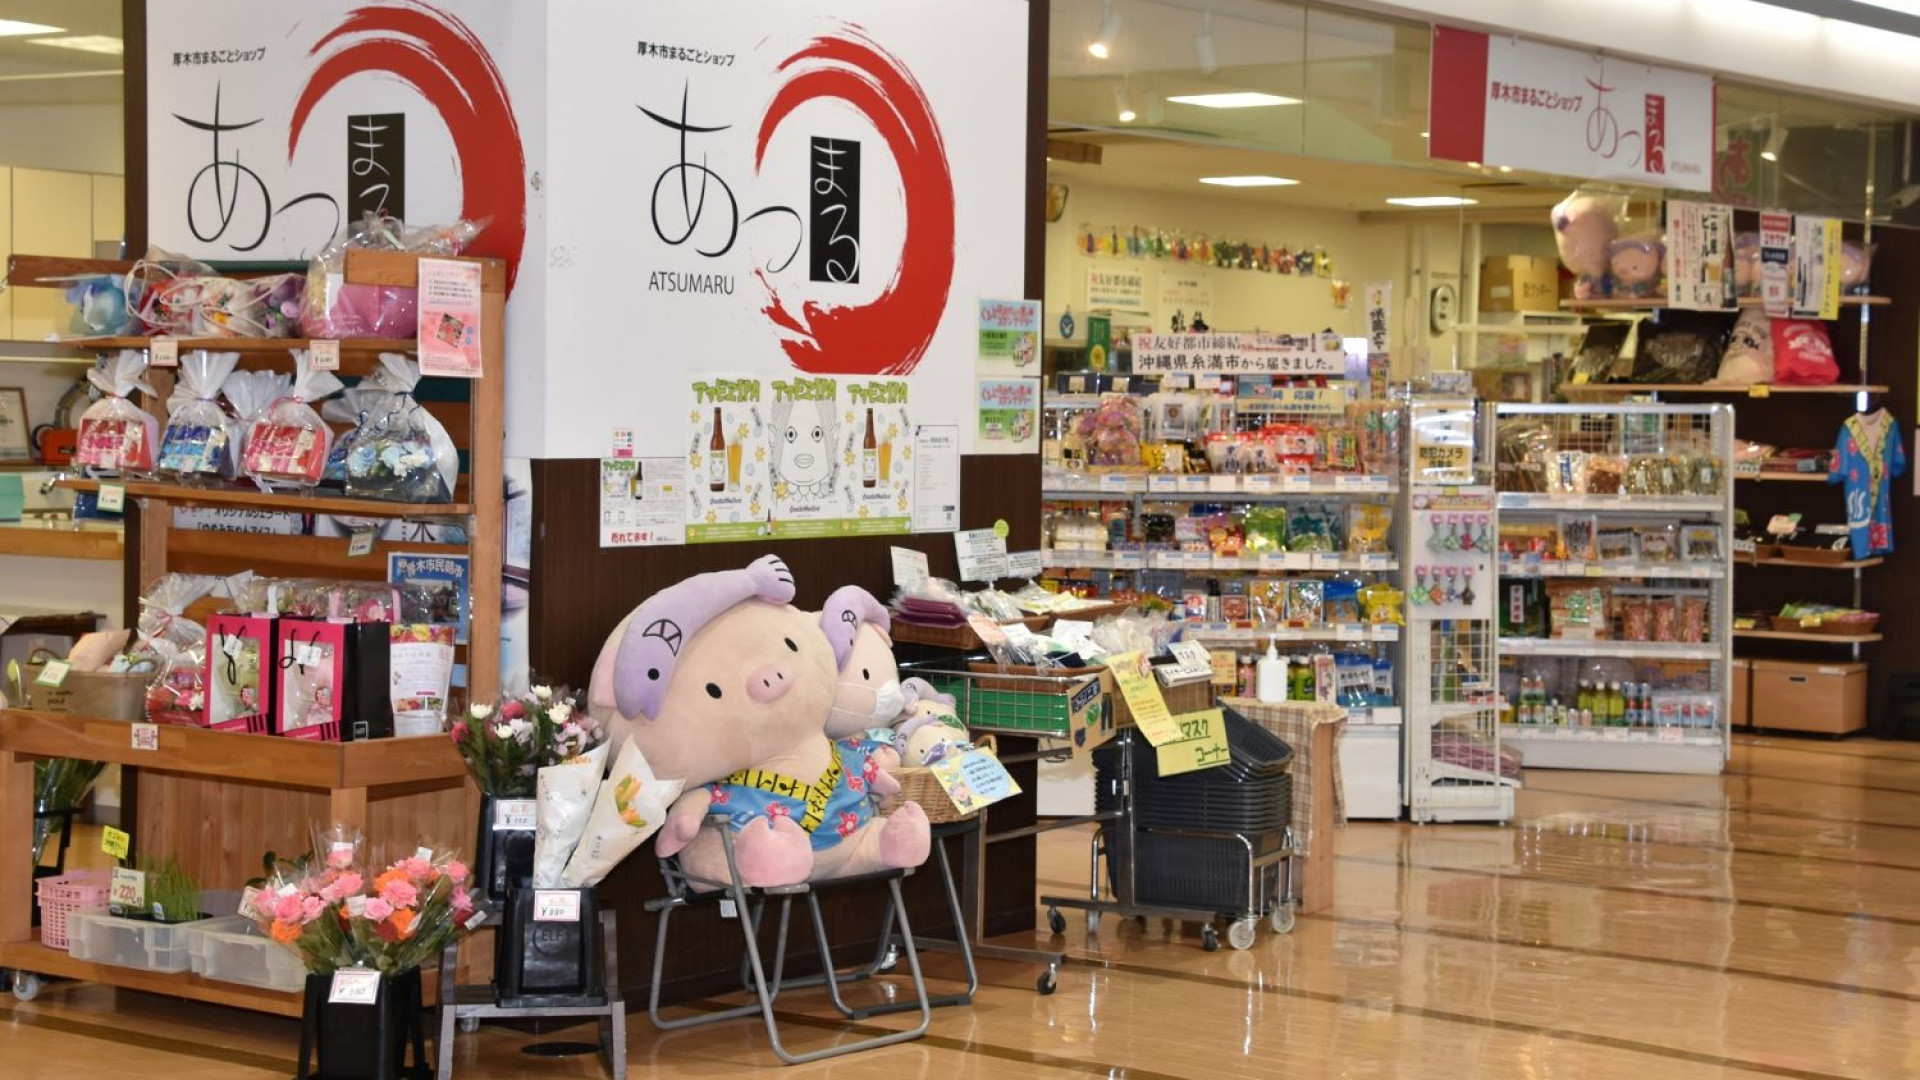 Tienda de especialidades de la ciudad de Atsugi "Atsumaru"